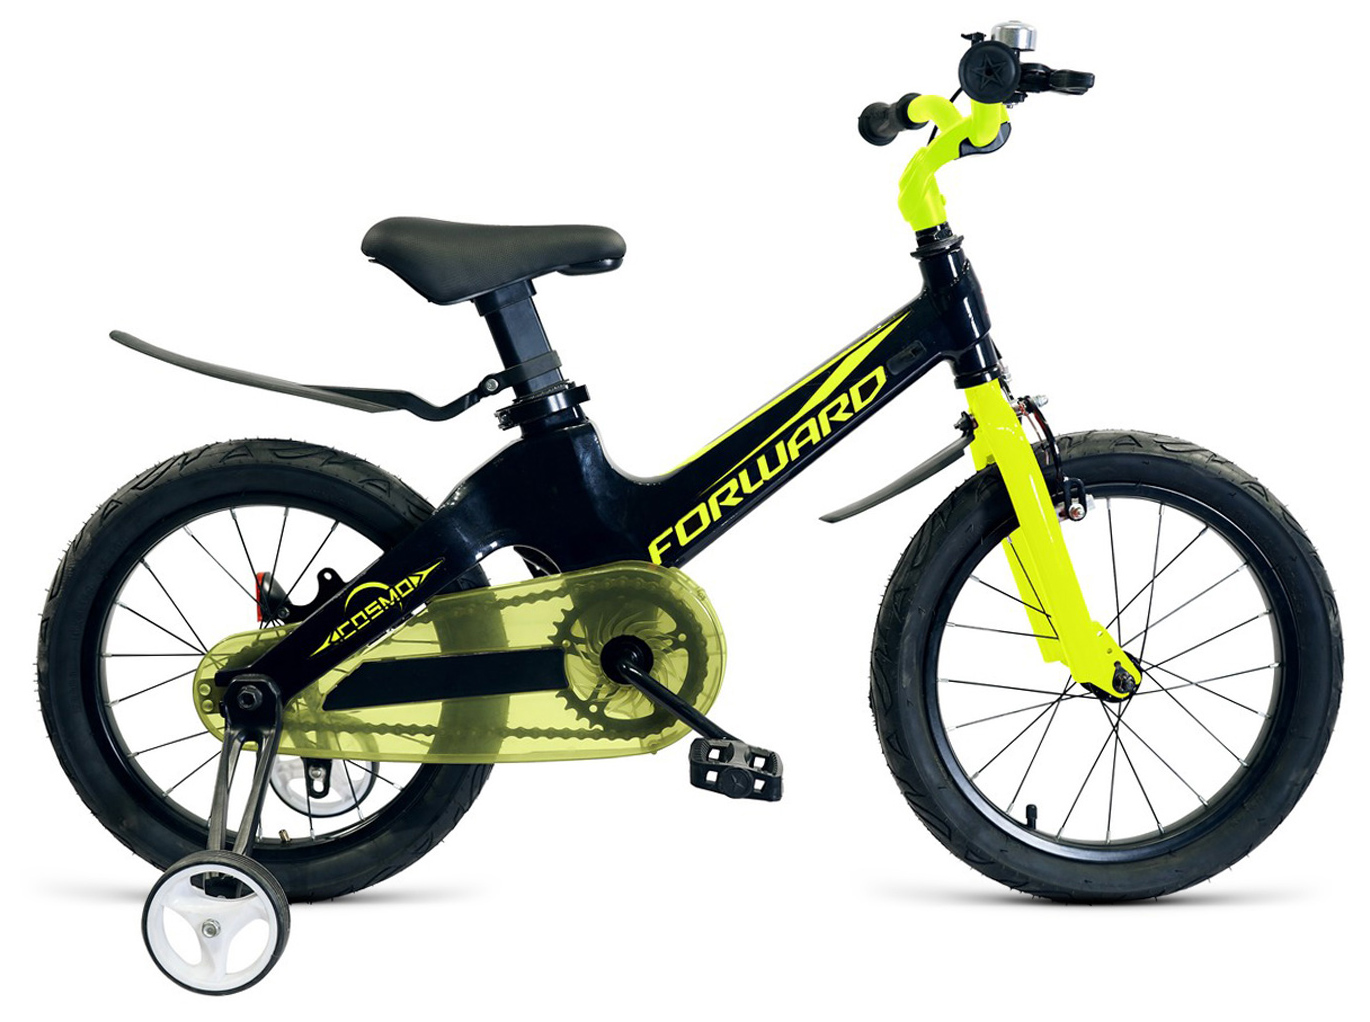  Отзывы о Детском велосипеде Forward Cosmo 18 2019